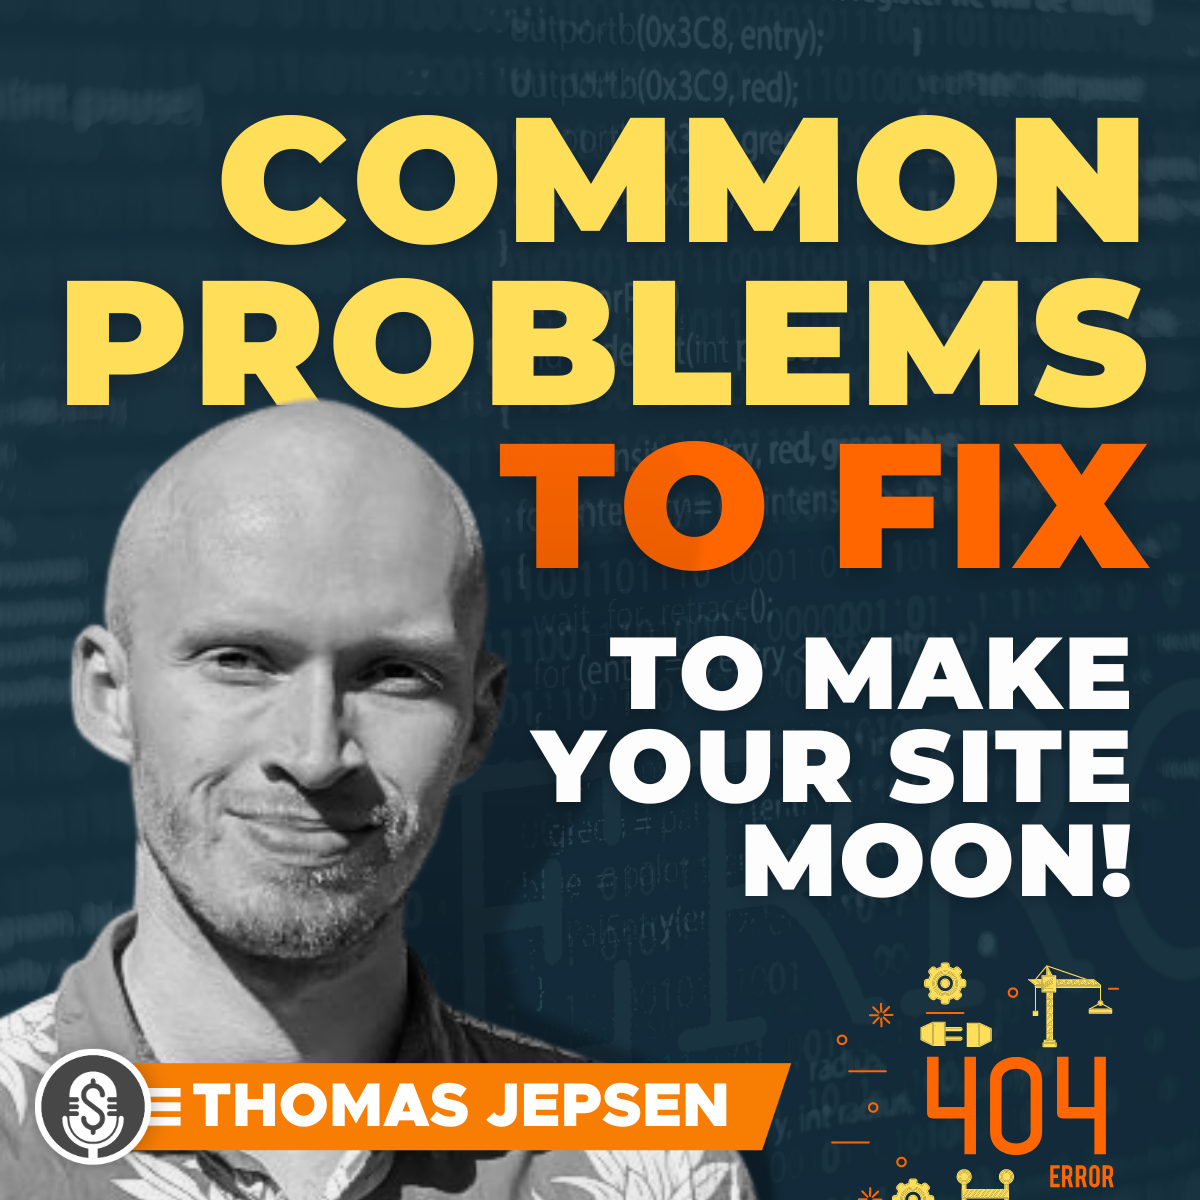 Thomas Jepsen on common problems to fix to make your site MOON